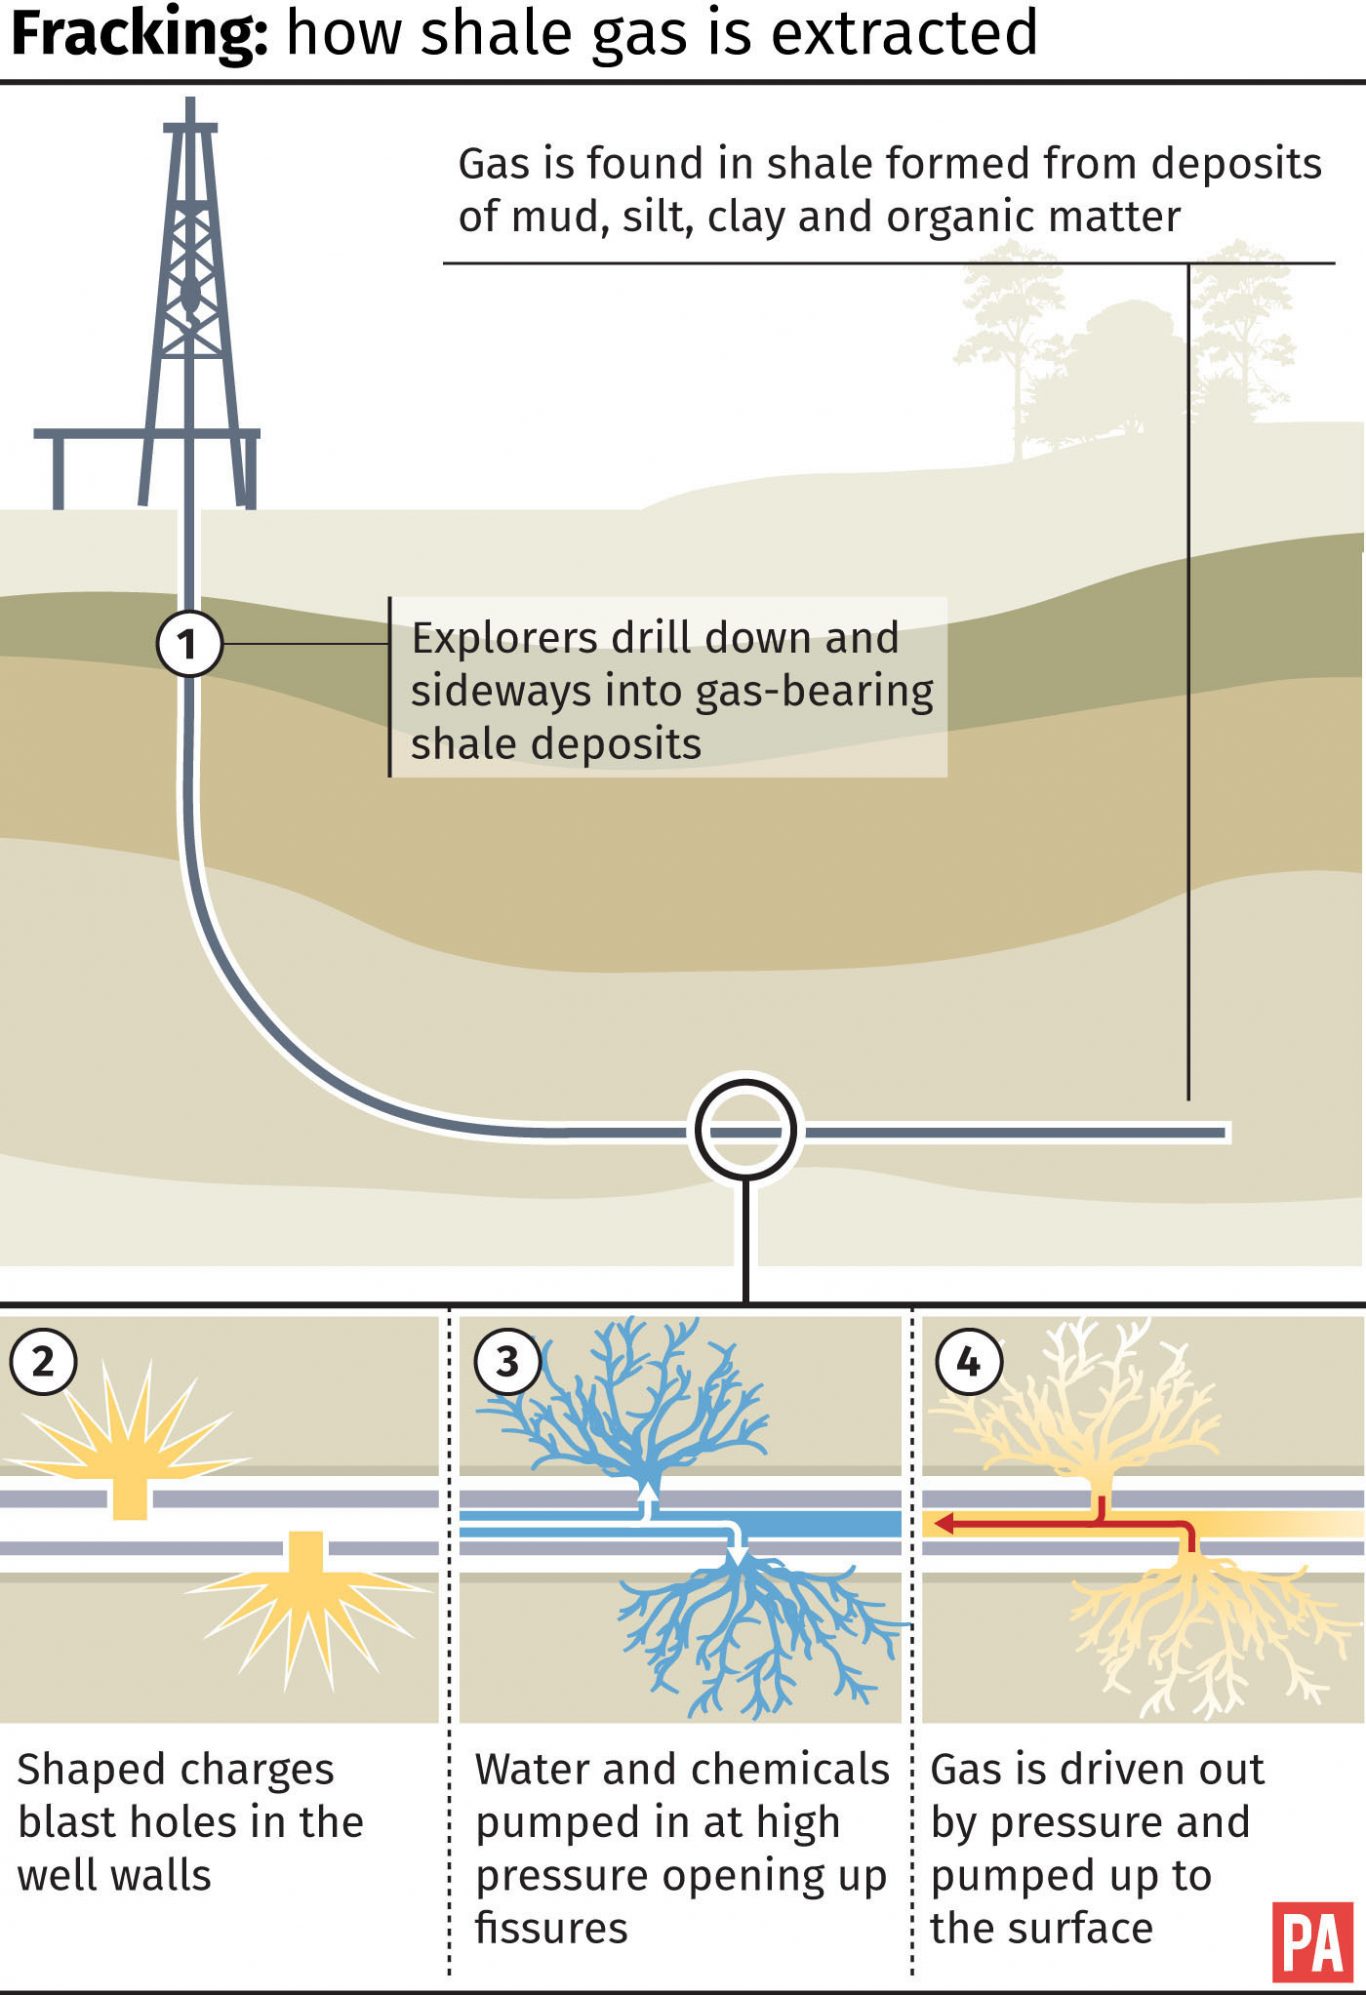 How fracking works.